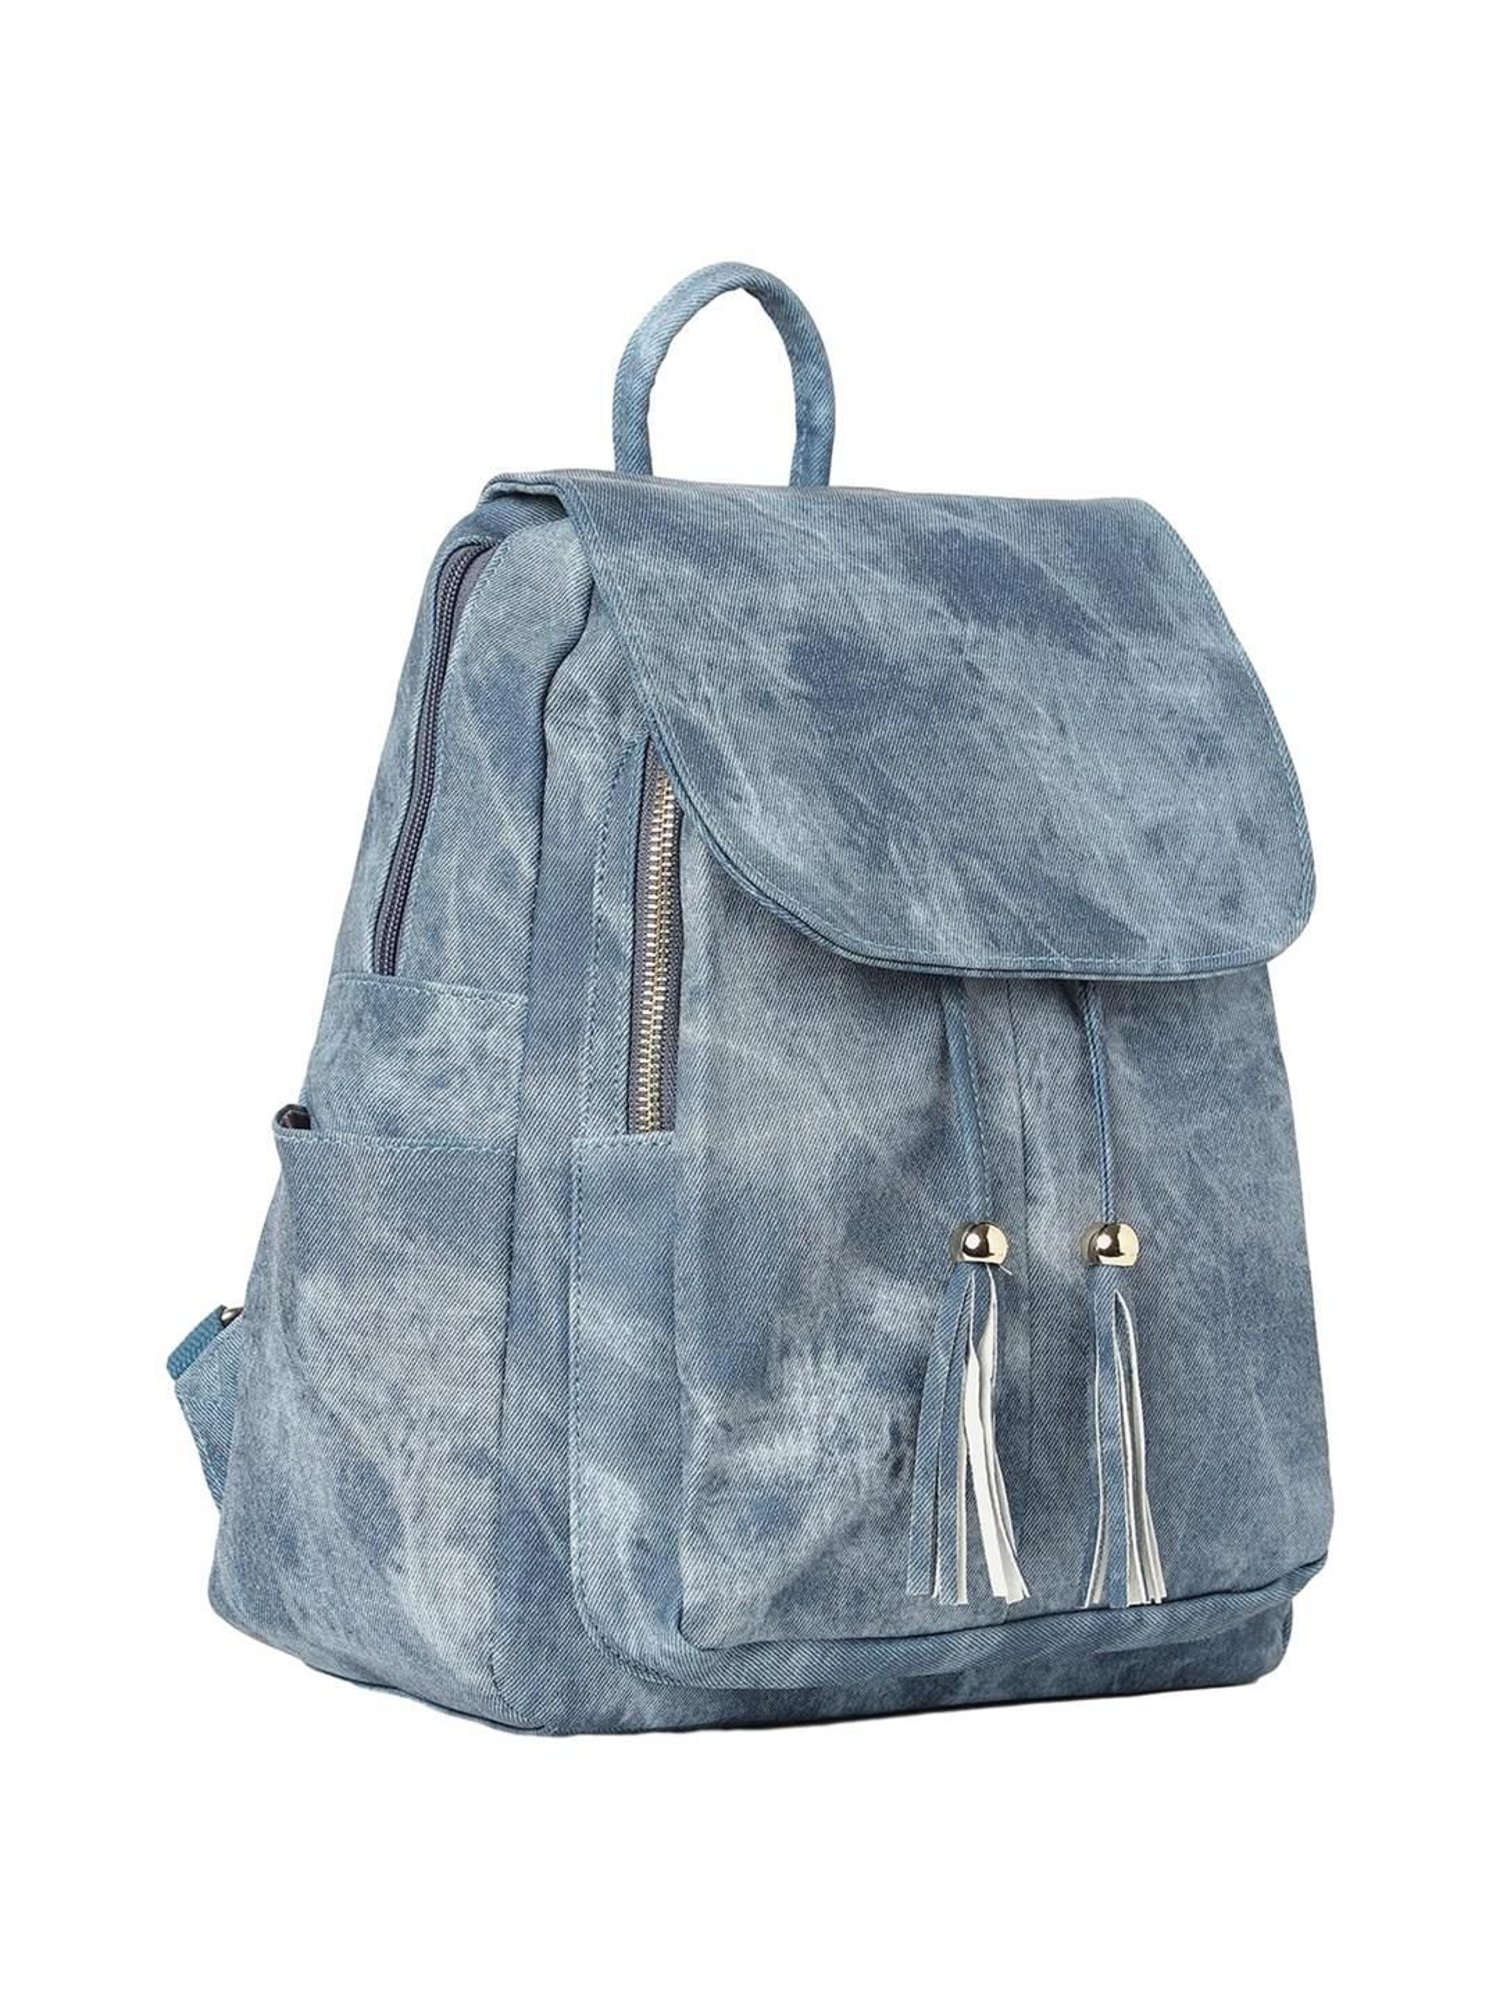 Vintage Denim Satchel Backpack Rucksacks Blue Denim Retro Daypack Larg –  Travell Well